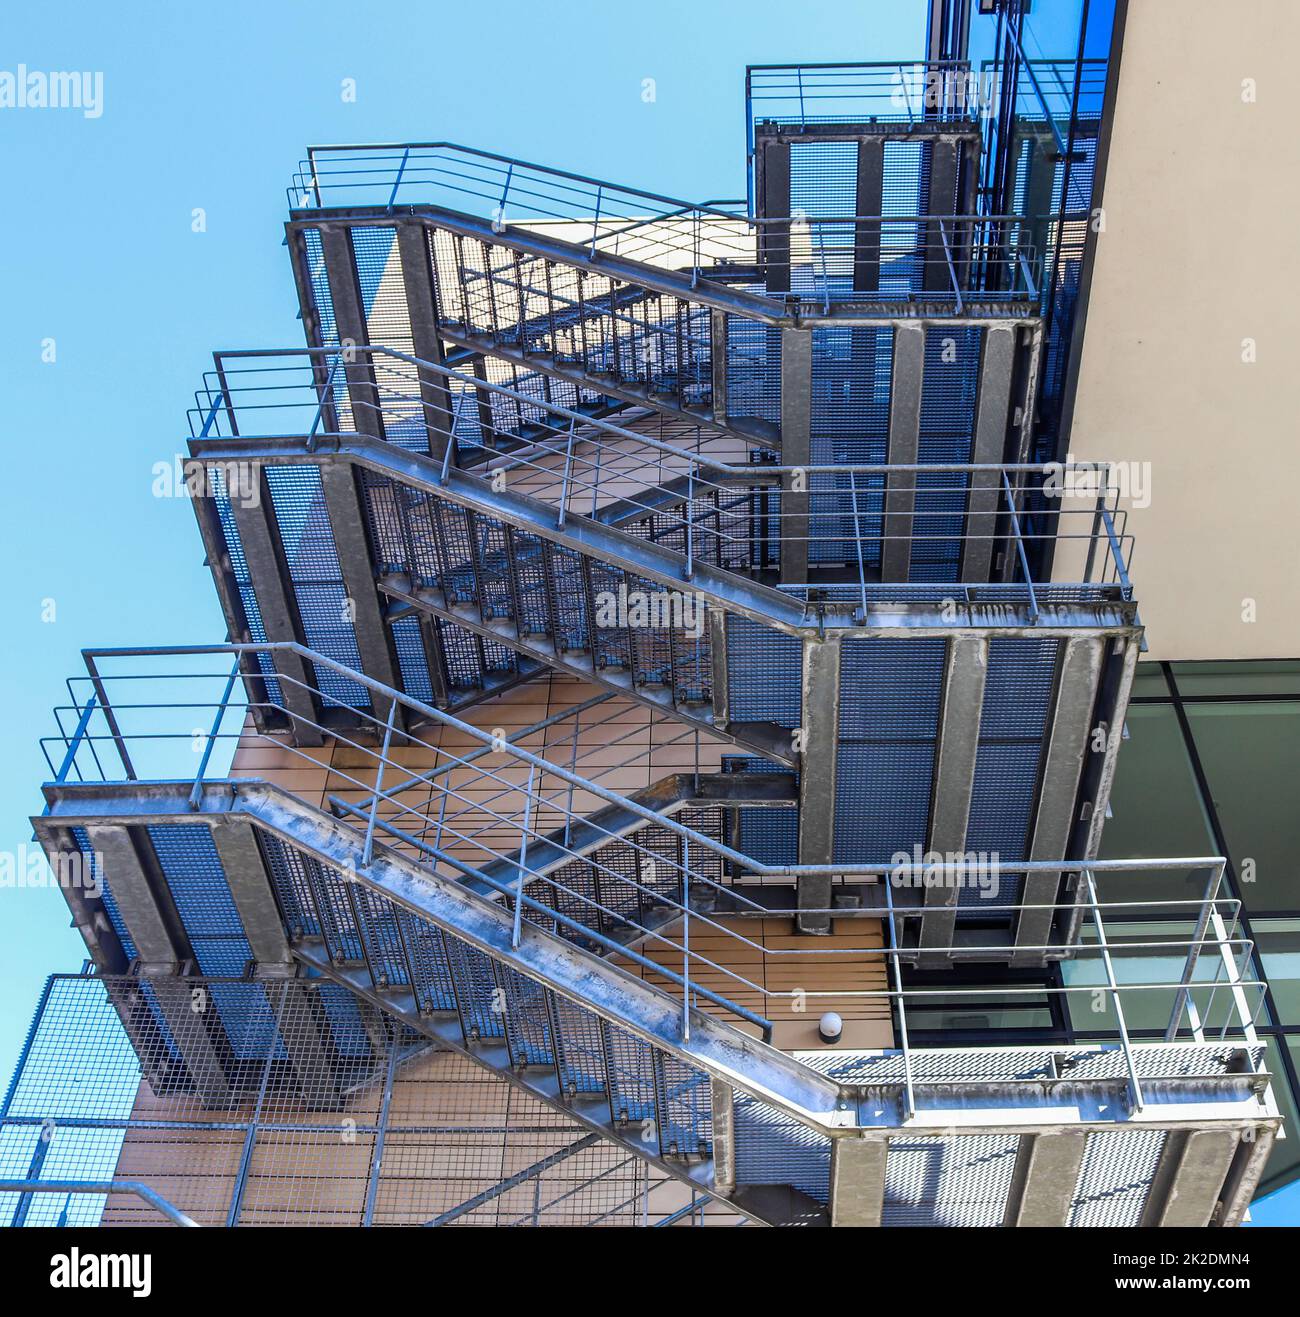 Grandi scale metalliche in un edificio di architettura moderna con un cielo blu. Foto Stock